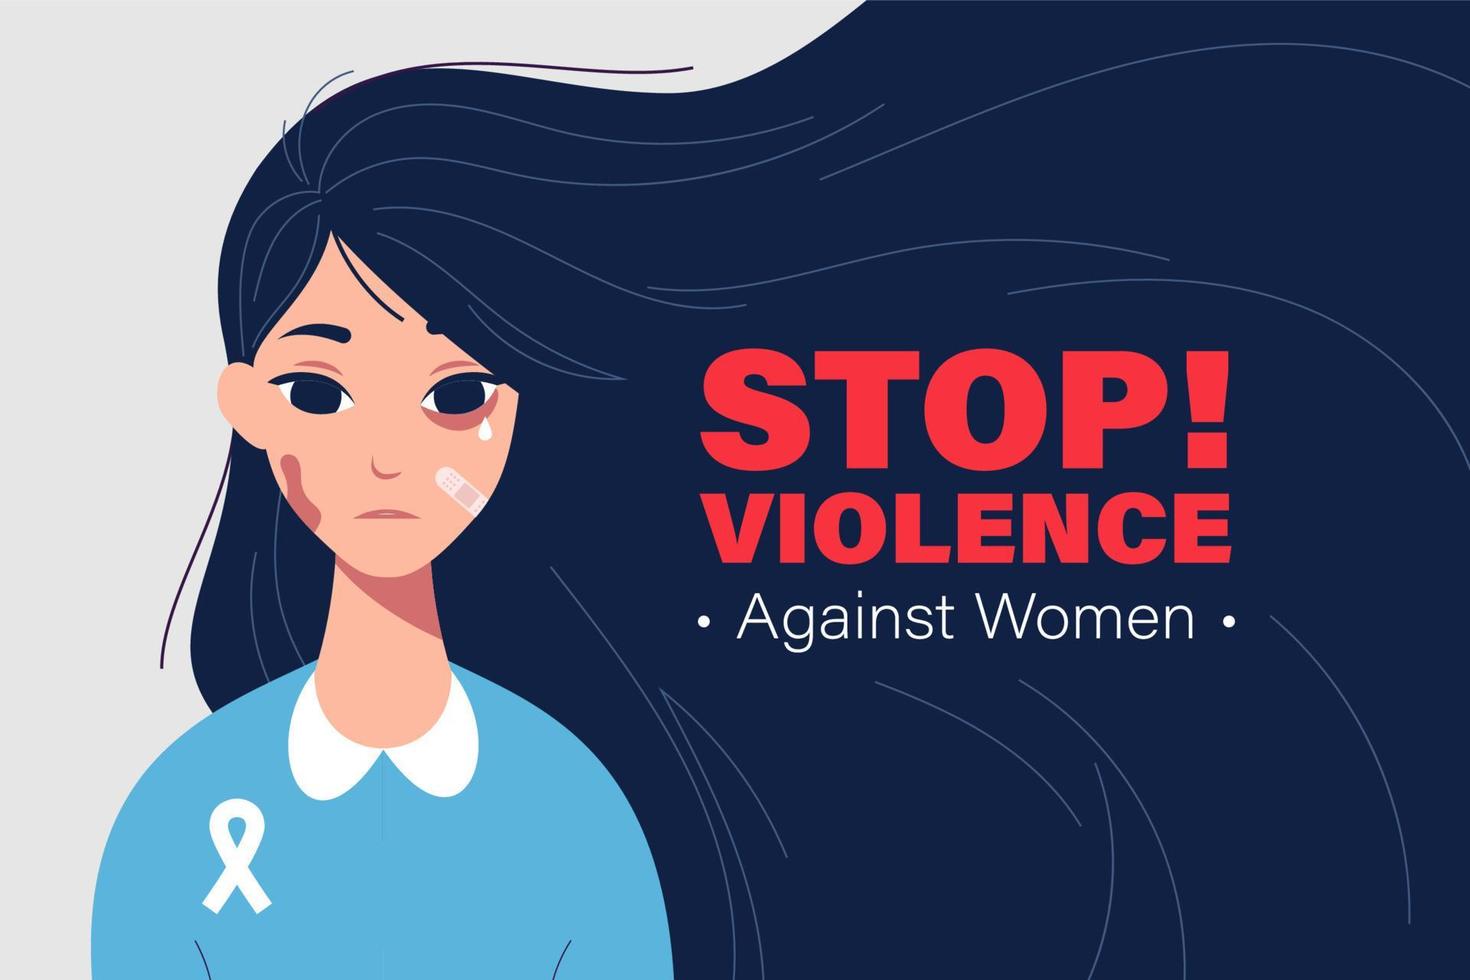 Internationaler Tag zur Beseitigung von Gewalt gegen Frauen vektor